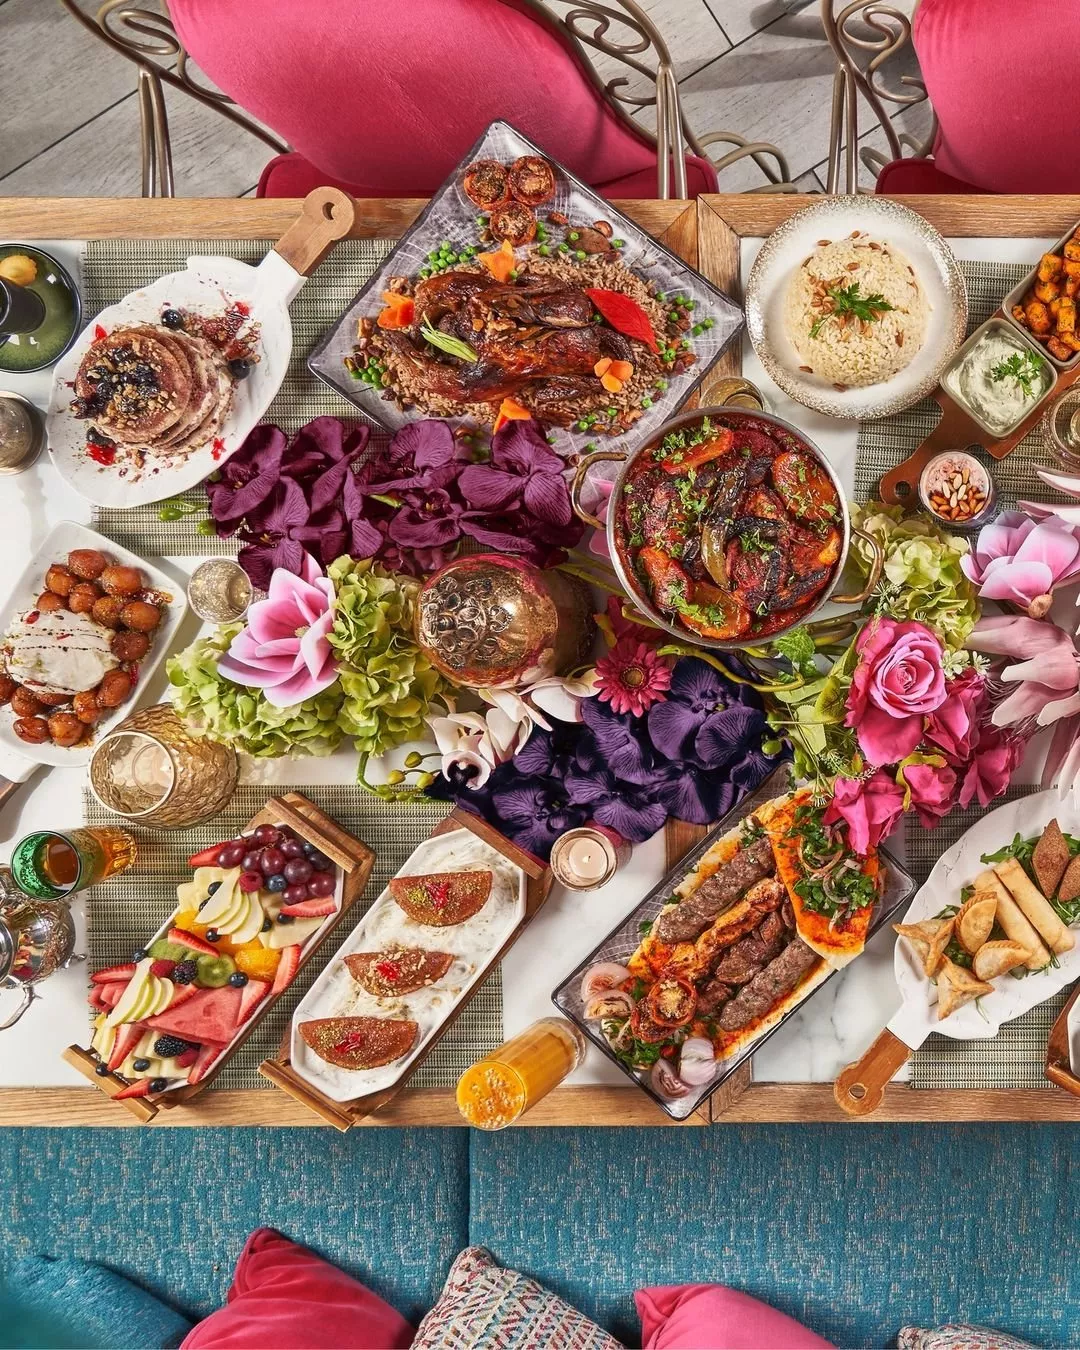 أفضل ١٠ مطاعم لبنانية في أبو ظبي لا تفوتي زيارتها للتمتع بألذ أنواع المأكولات